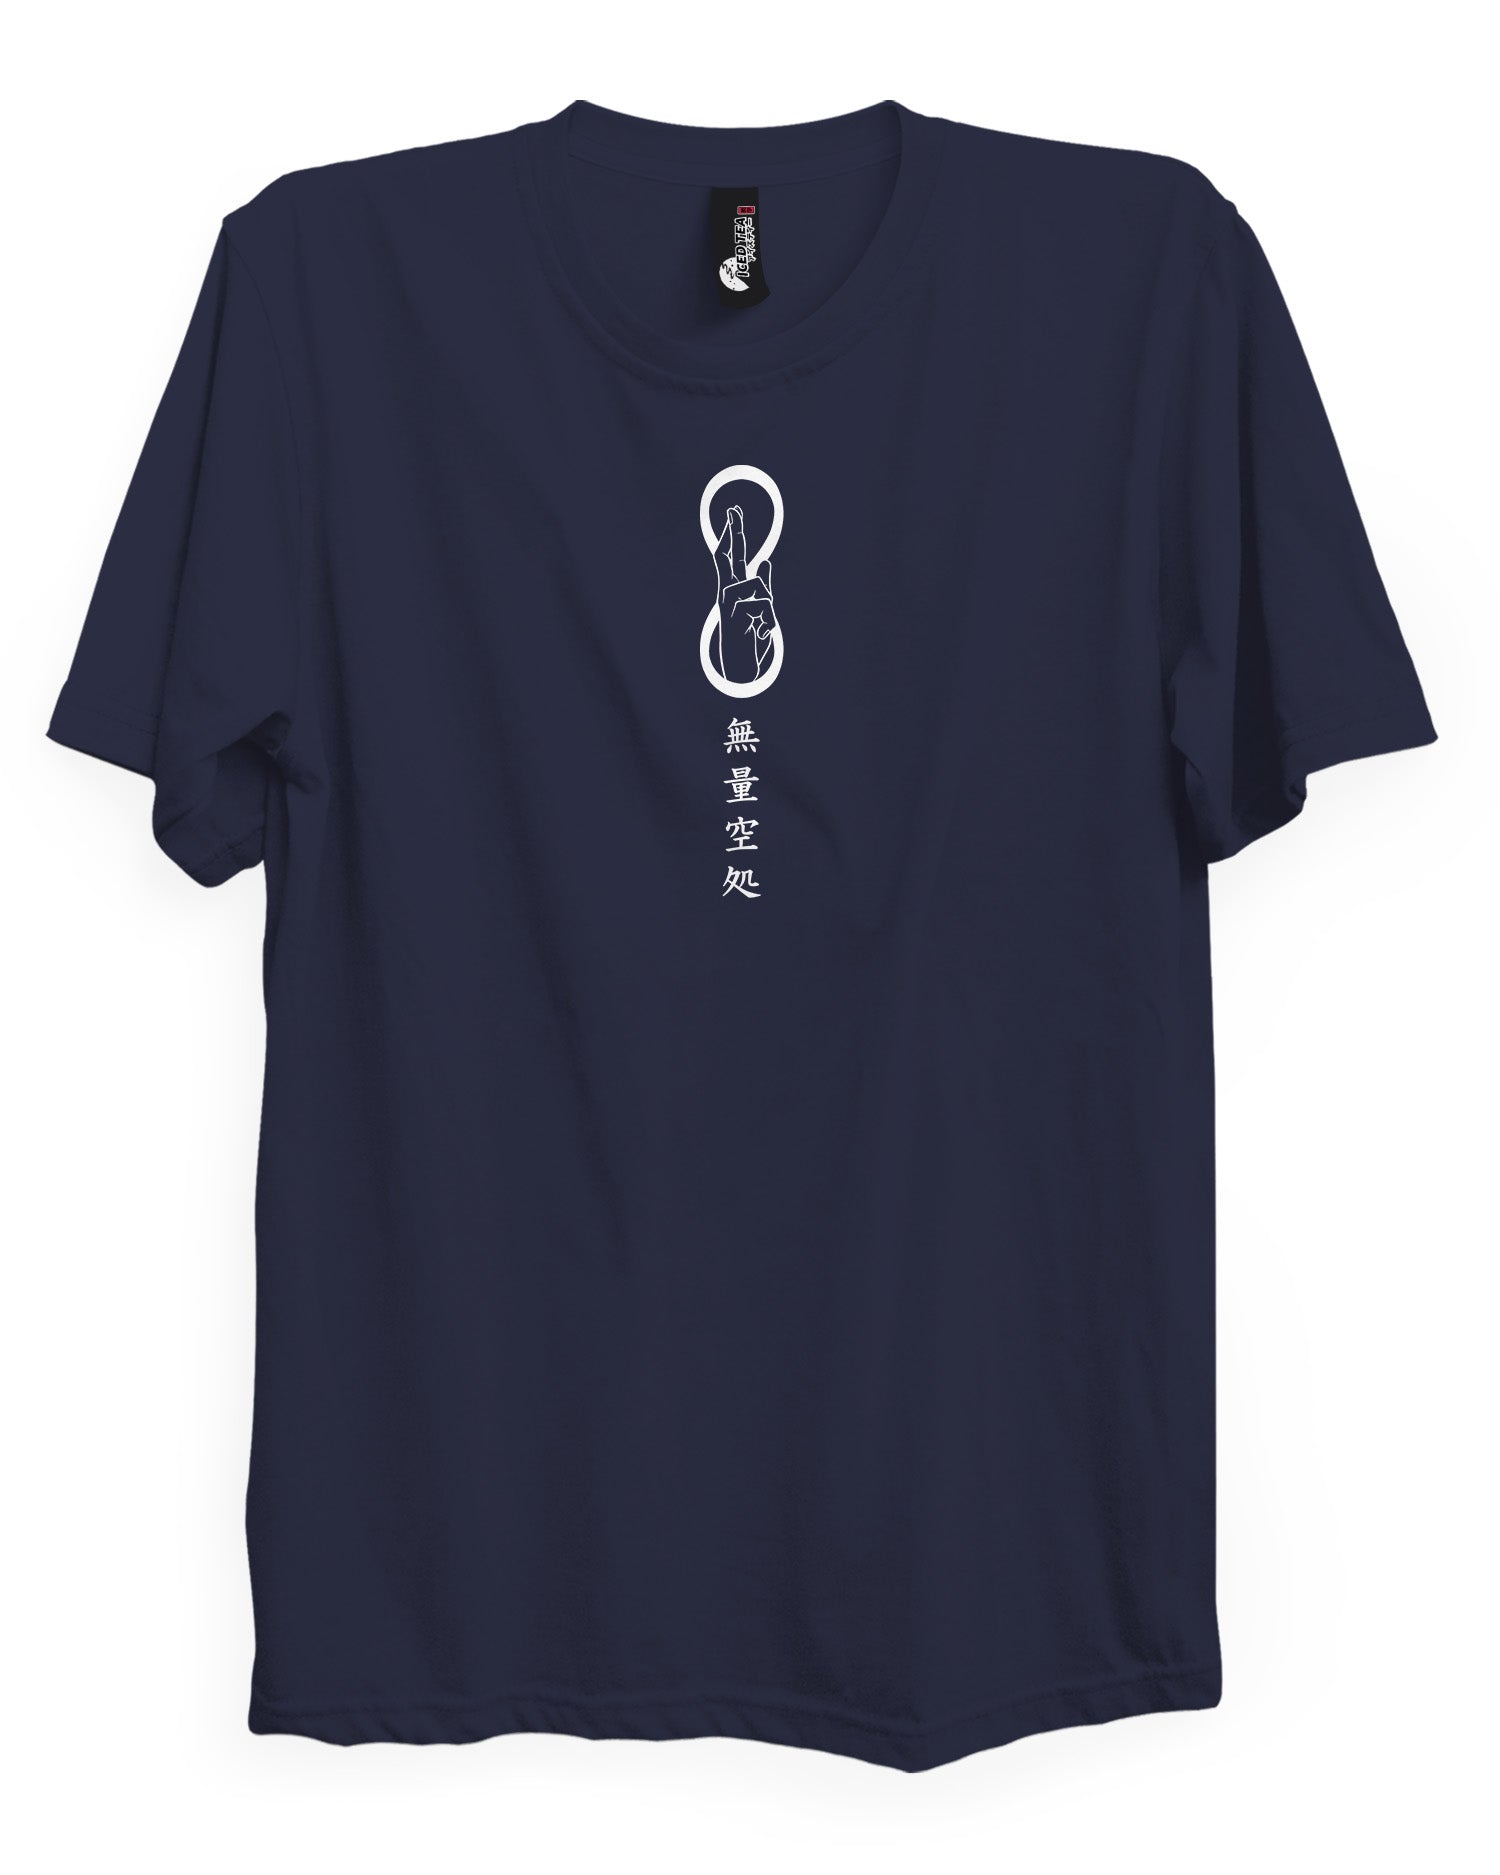 Gojo (Infinite Void) - T-Shirt